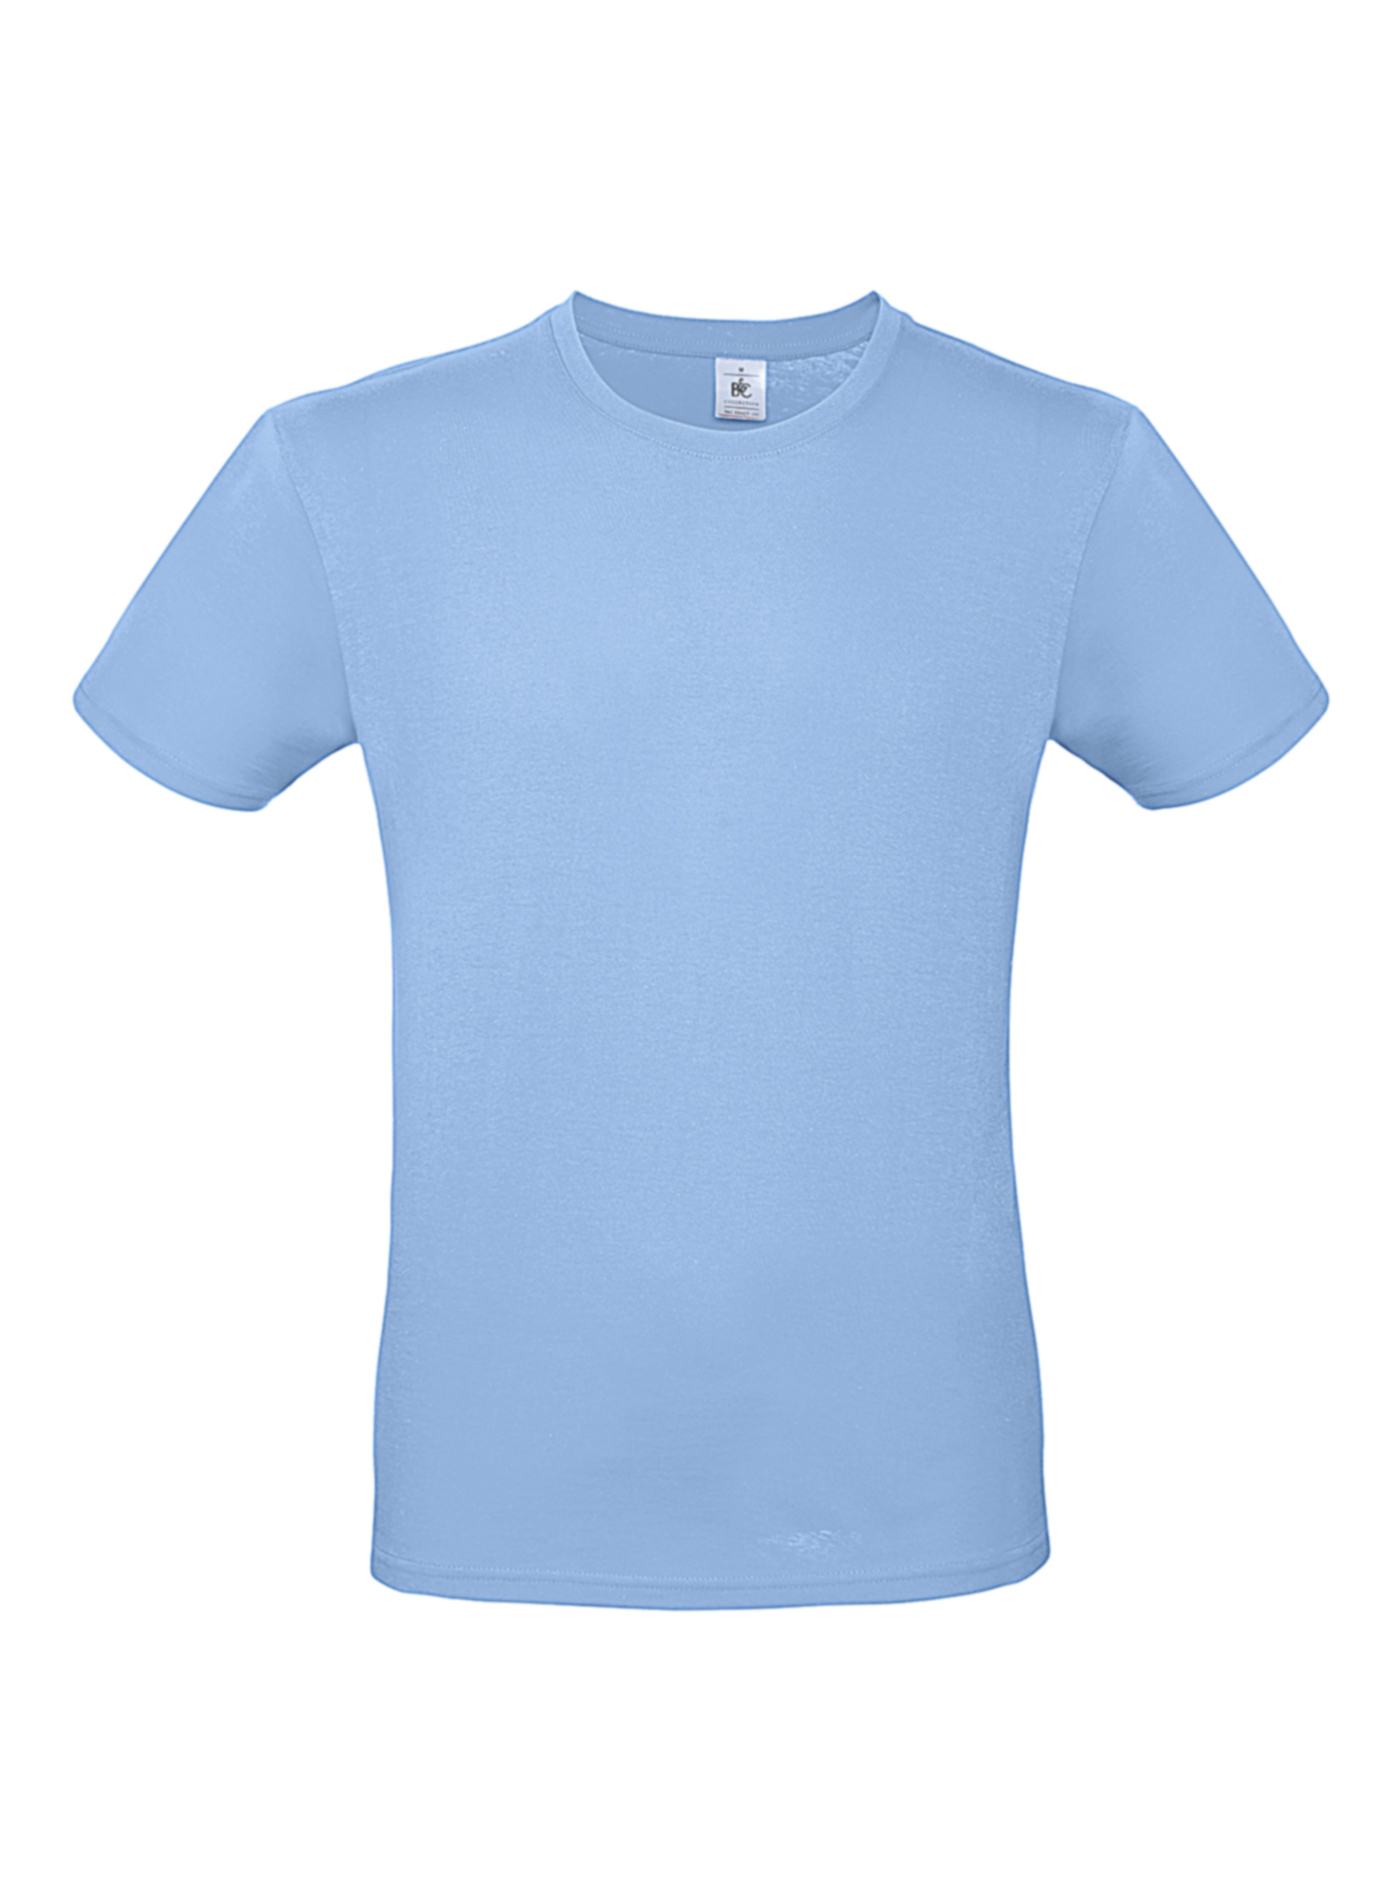 Pánské tričko B&C - Blankytně modrá XXL